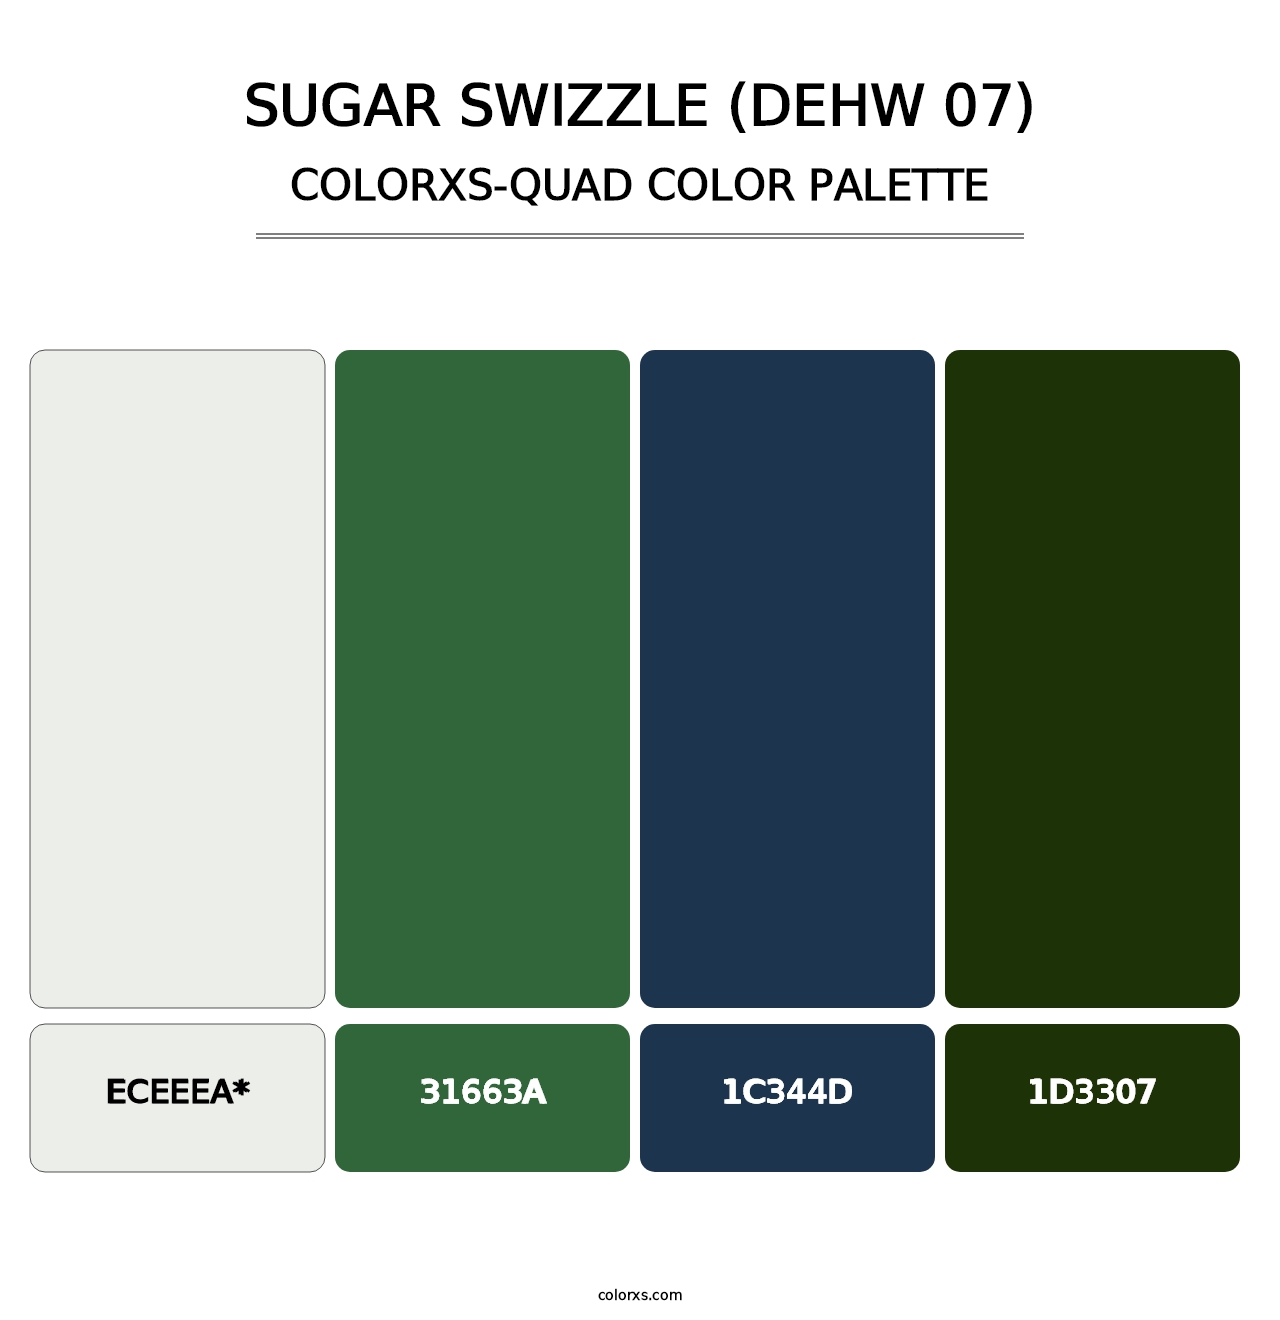 Sugar Swizzle (DEHW 07) - Colorxs Quad Palette